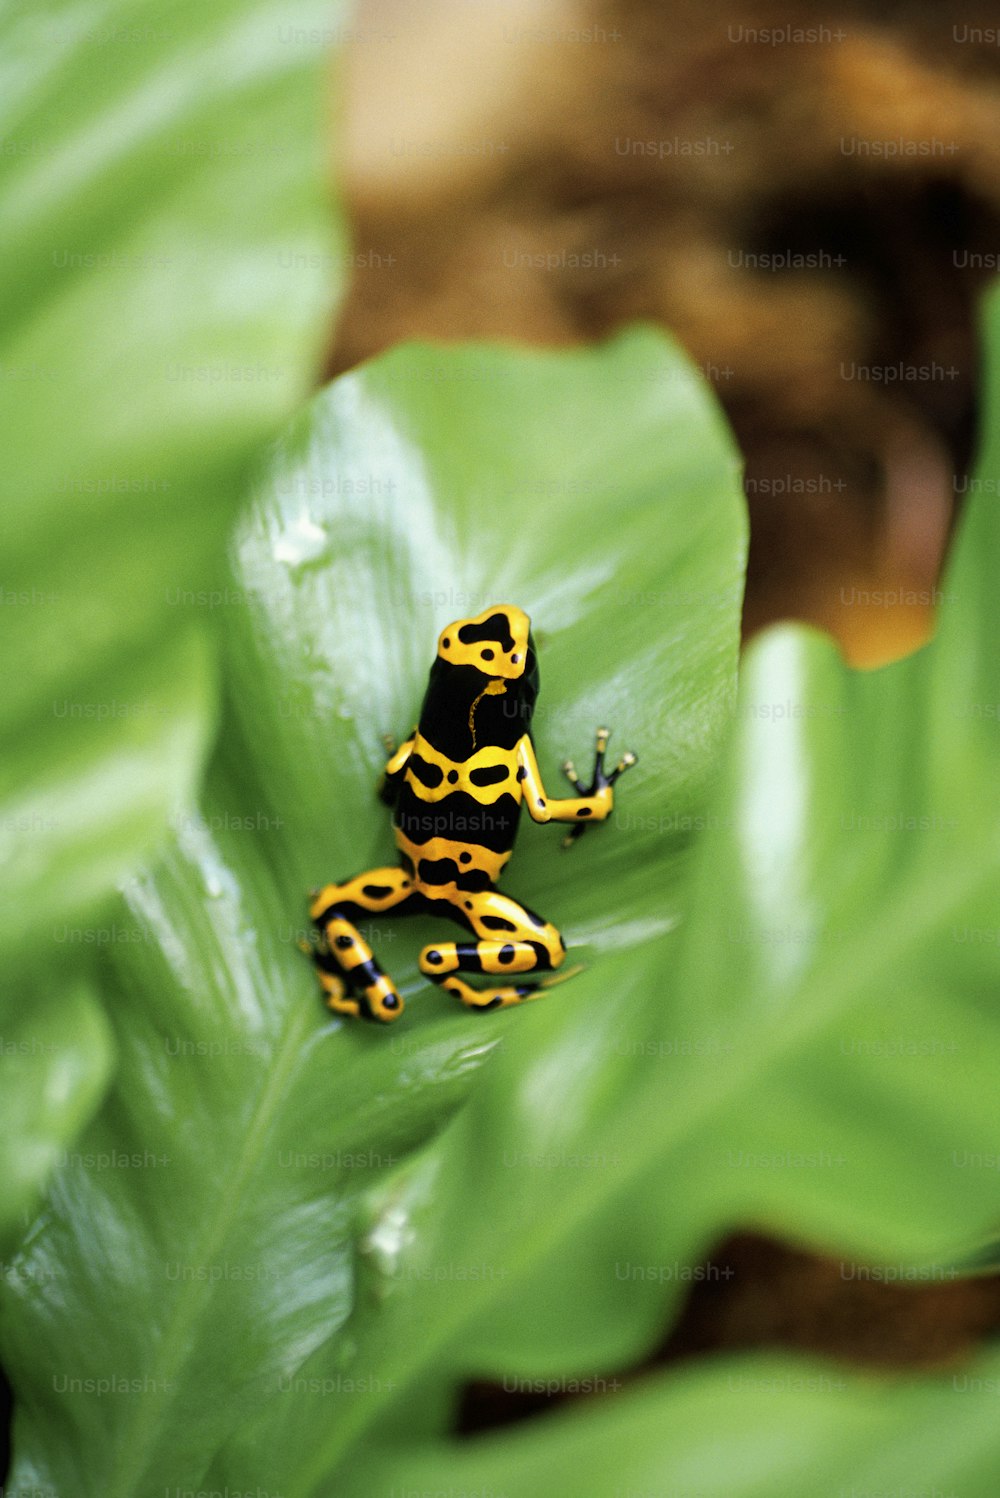 녹색 잎 위에 앉아 있는 노란색과 검은색 개구리